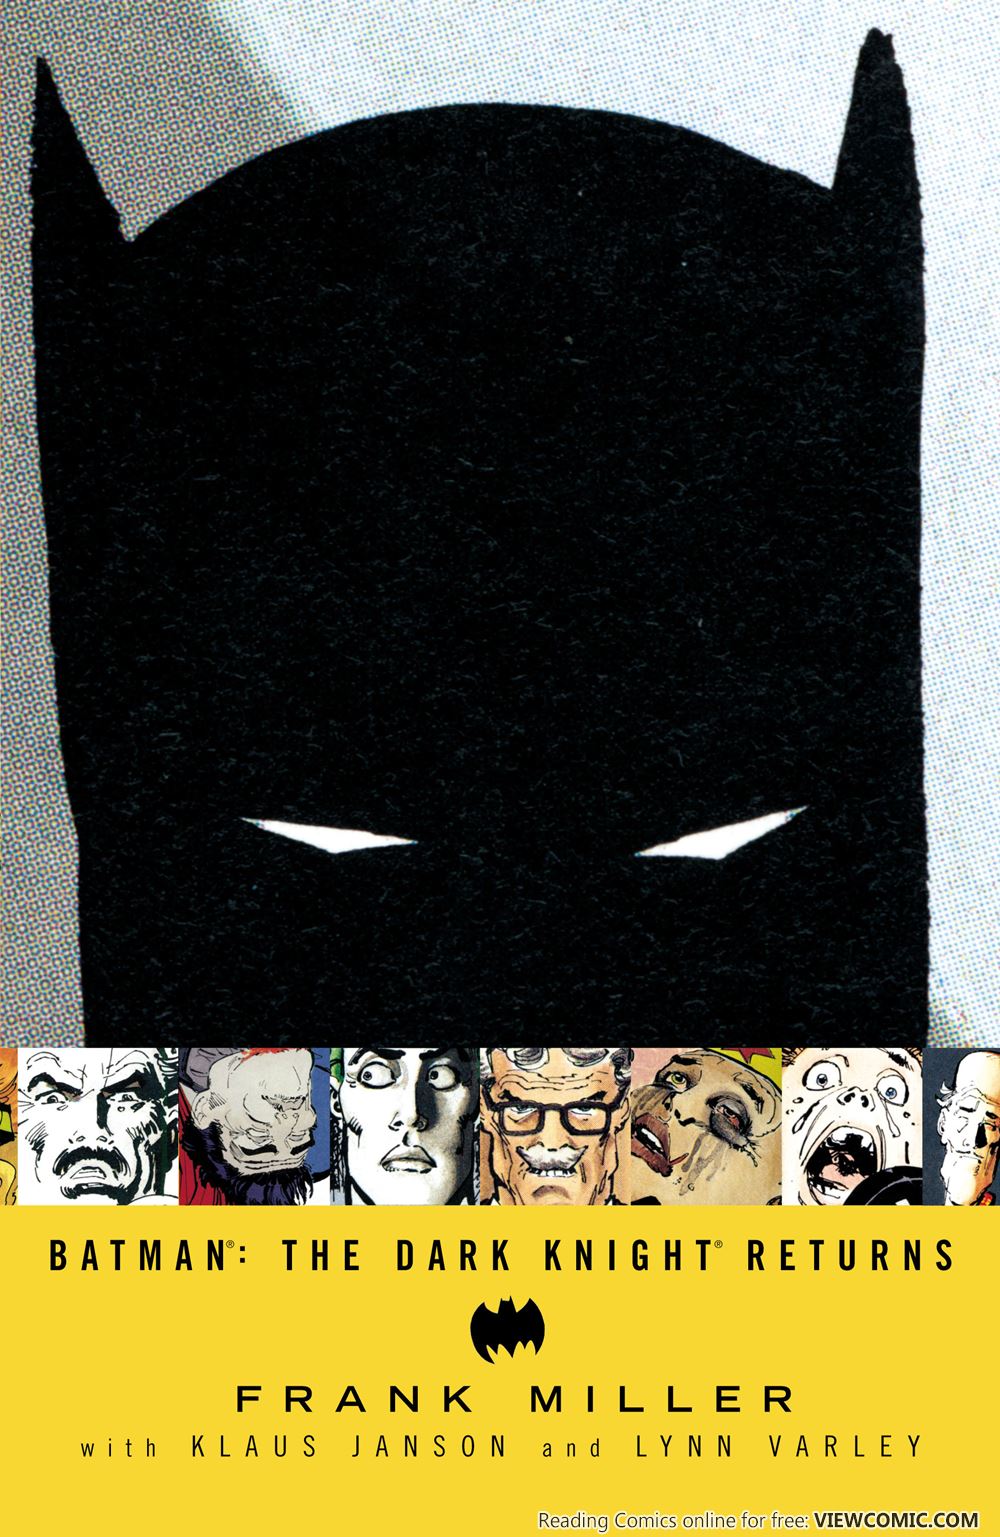 Batman The Dark Knight Returns 1986 | Read Batman The Dark Knight Returns  1986 comic online in high quality. Read Full Comic online for free - Read comics  online in high quality .|